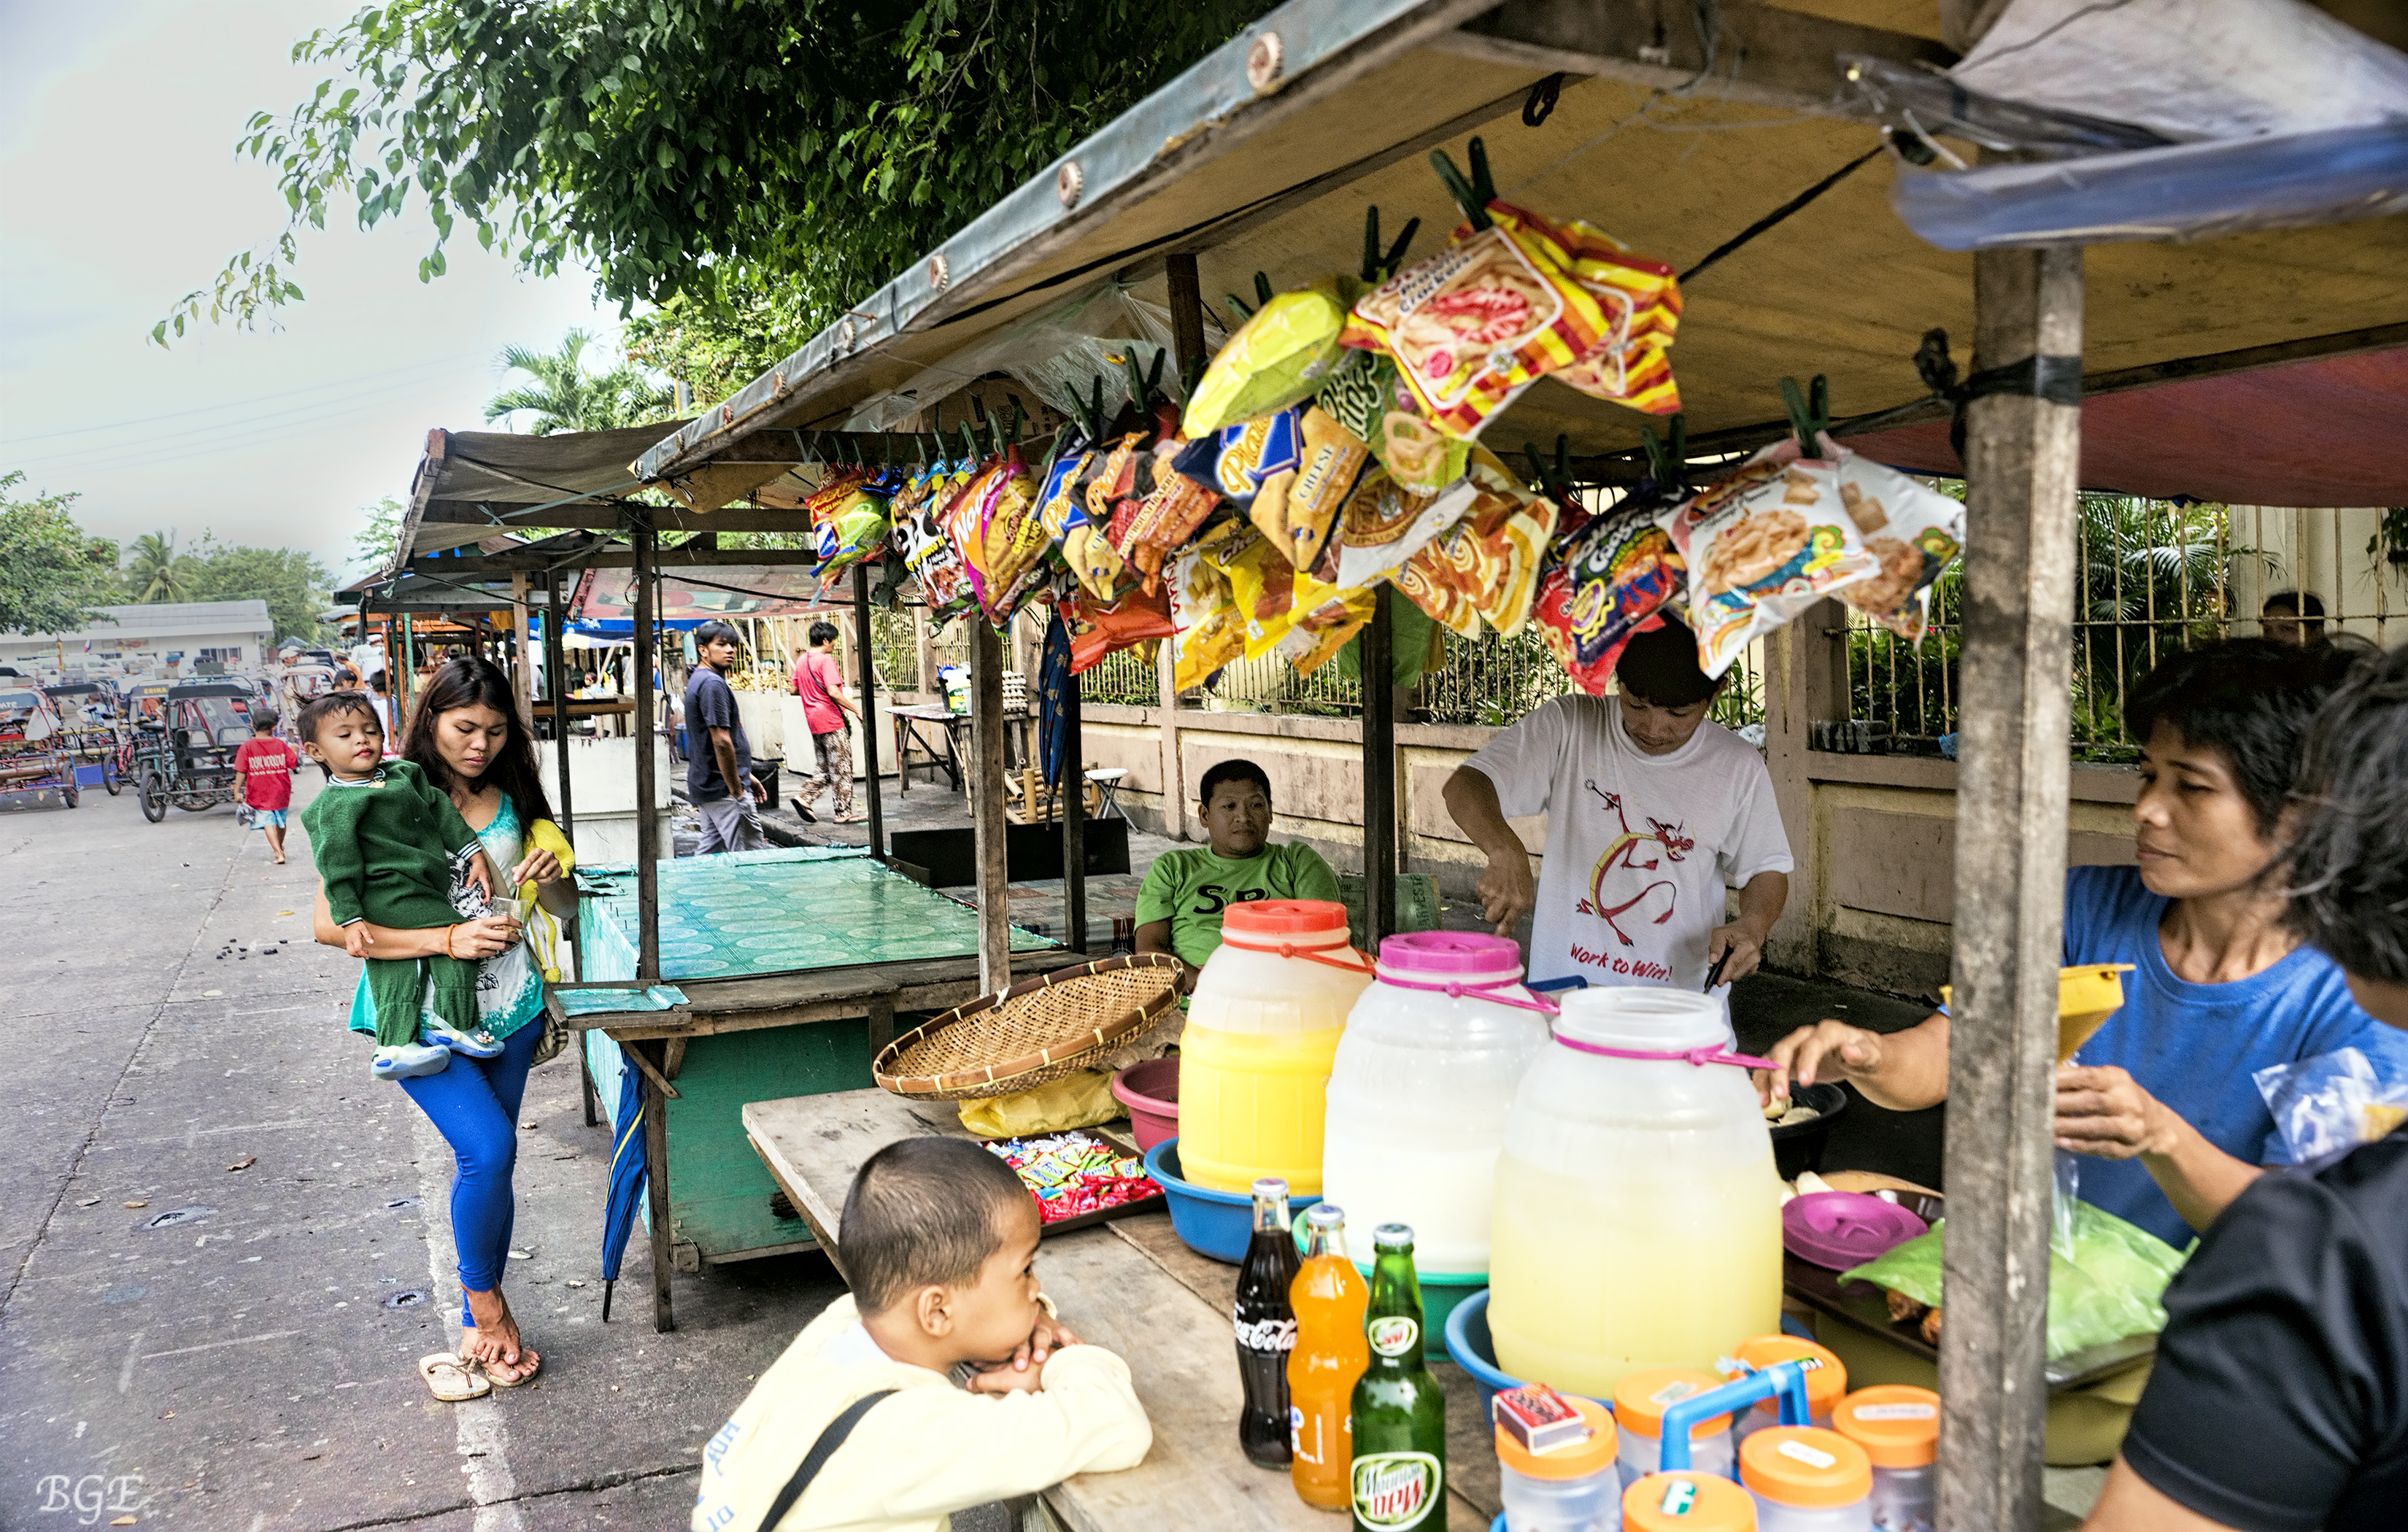 Street food in the Philippines, streetfood, kwek kwek, siomai